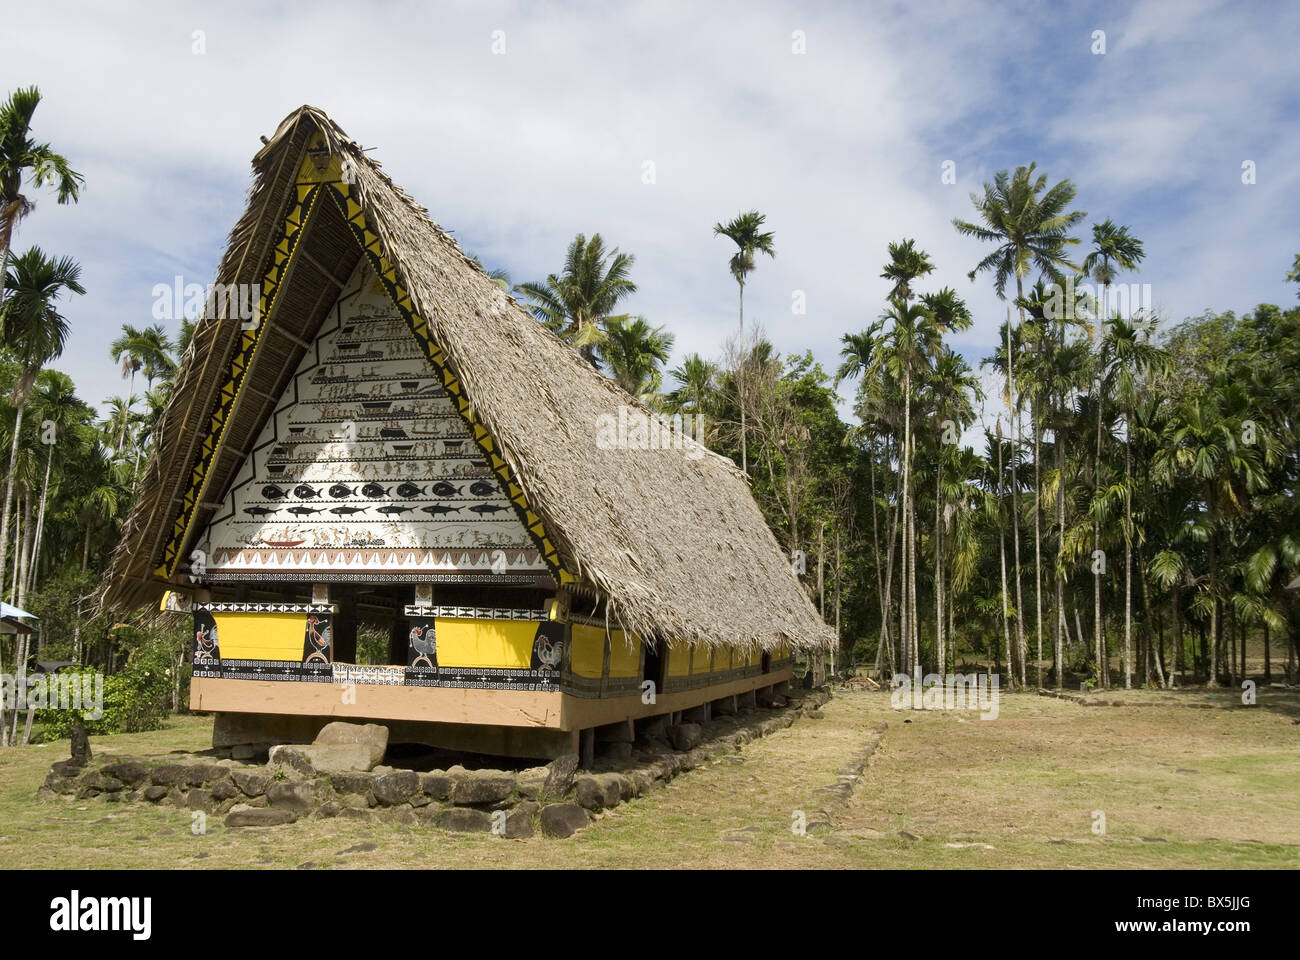 Airai Bai, la sagrada Casa de reuniones en el corazón de la aldea, de 200 años de antigüedad, en el sur de Babeldaob, Palau, Micronesia, Océano Pacífico Occidental Foto de stock